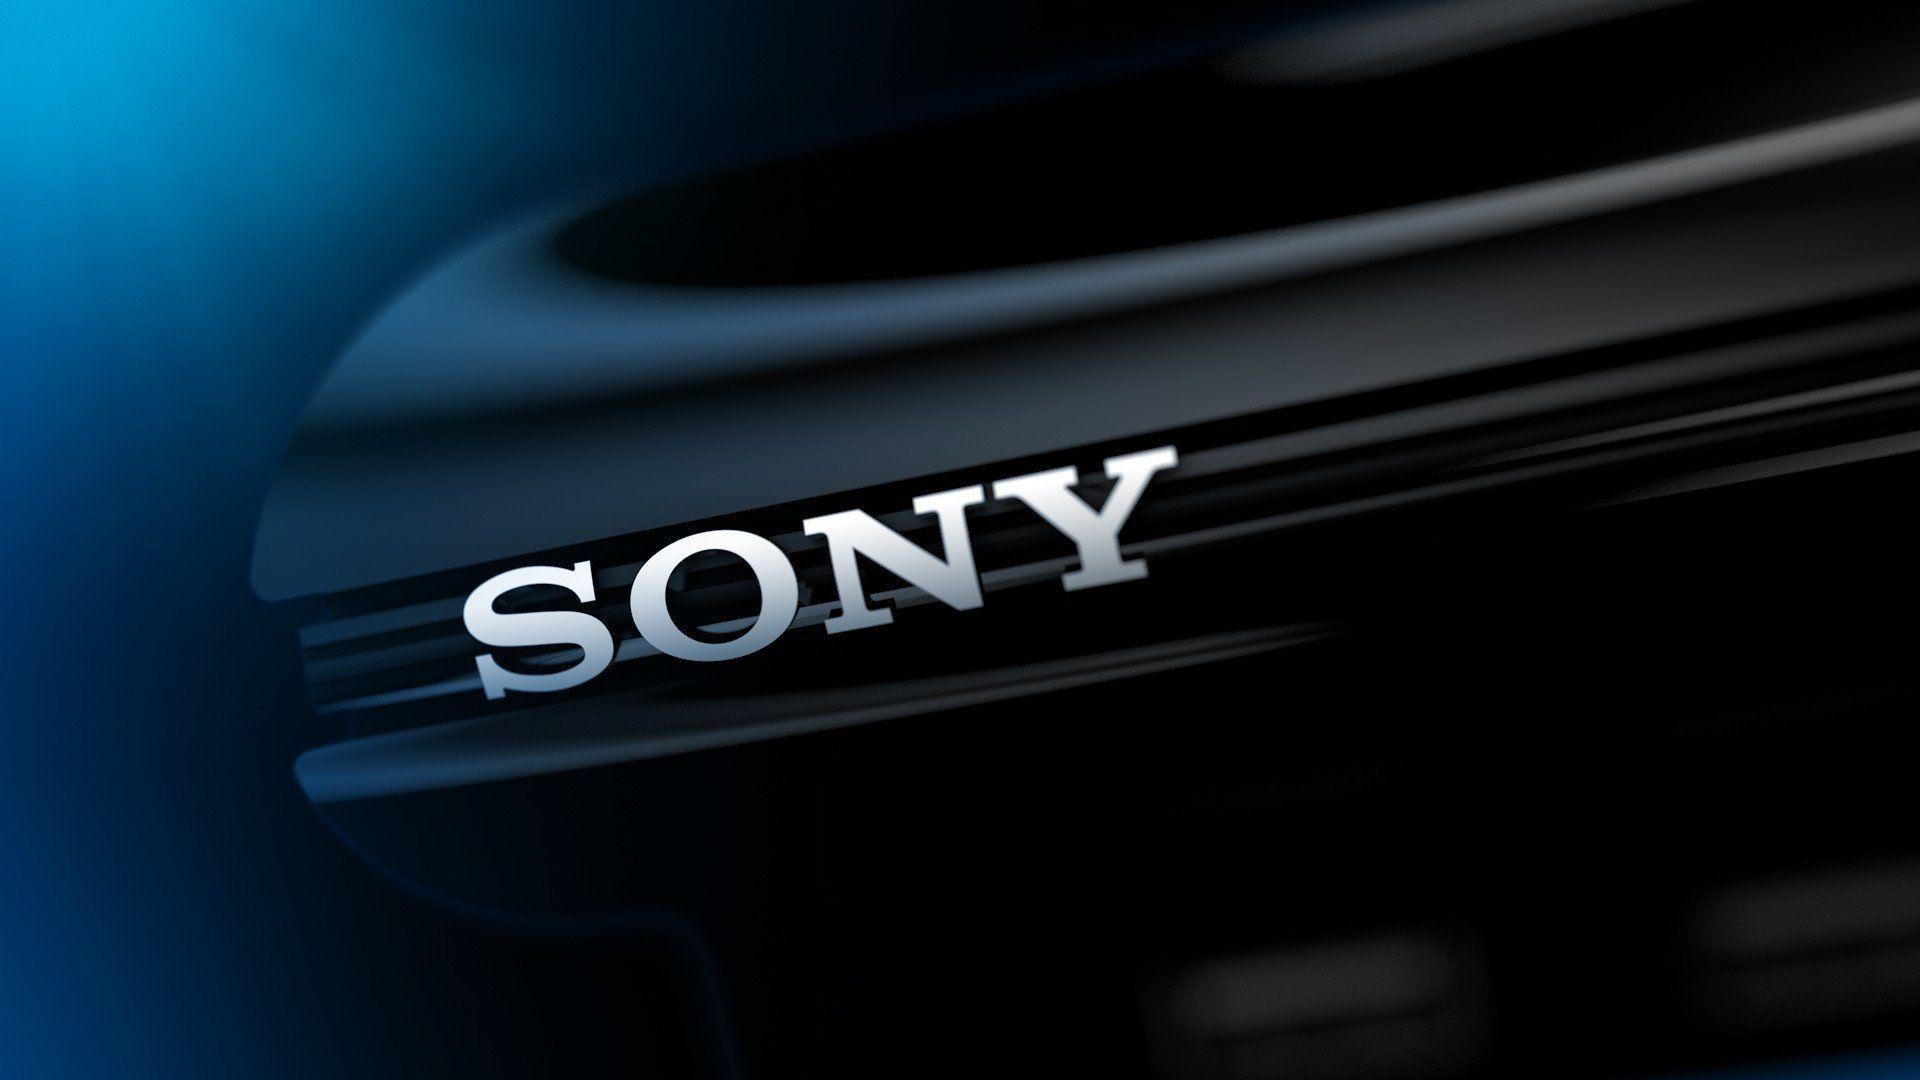 Il valore di mercato di Sony sprofonda di 20 Miliardi dopo l’acquisizione di Activision